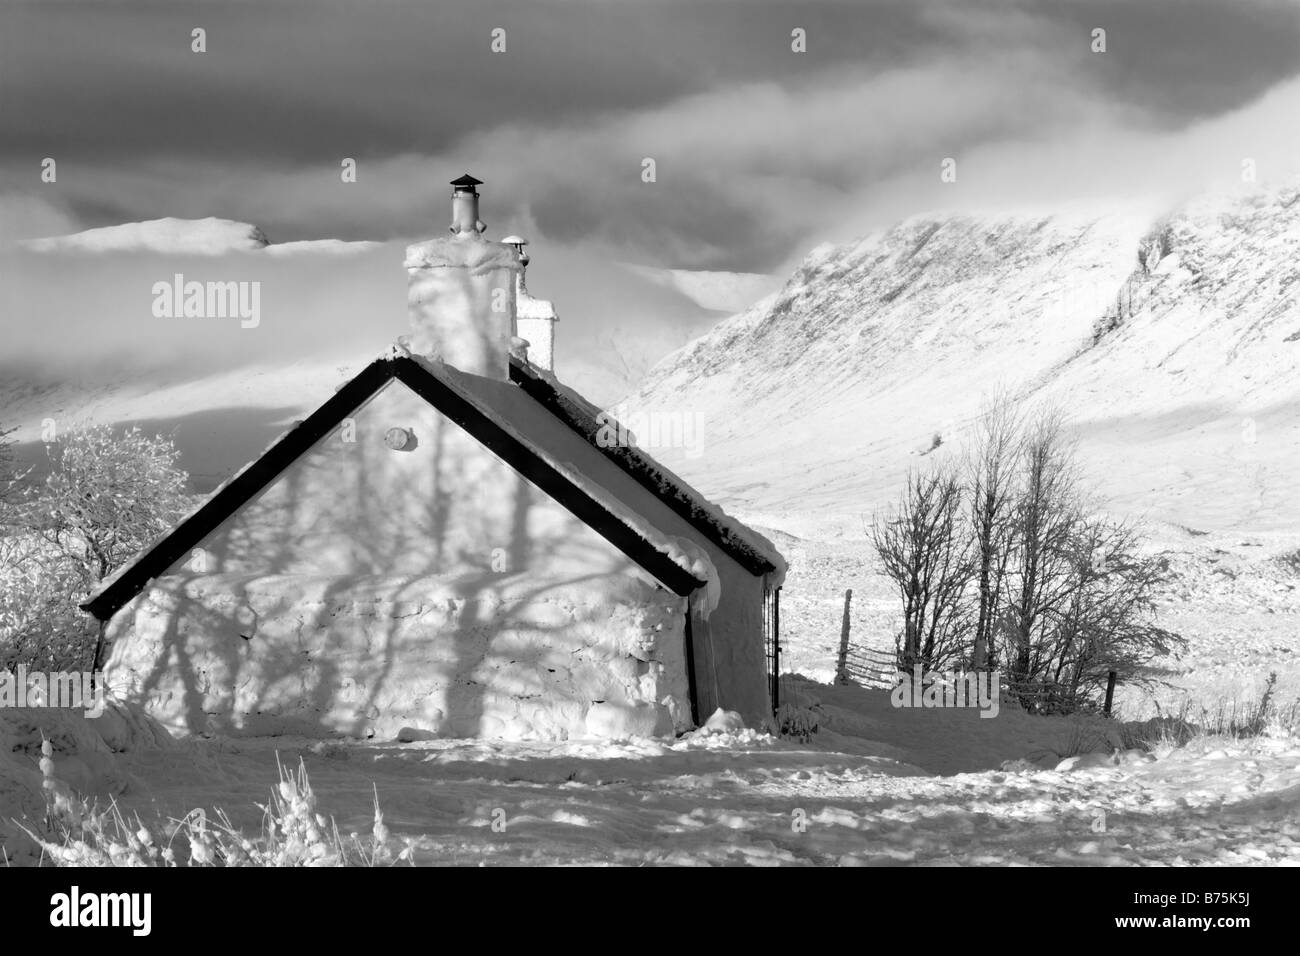 Blackrock Casa rural en la nieve t de Glen Coe, Escocia Foto de stock